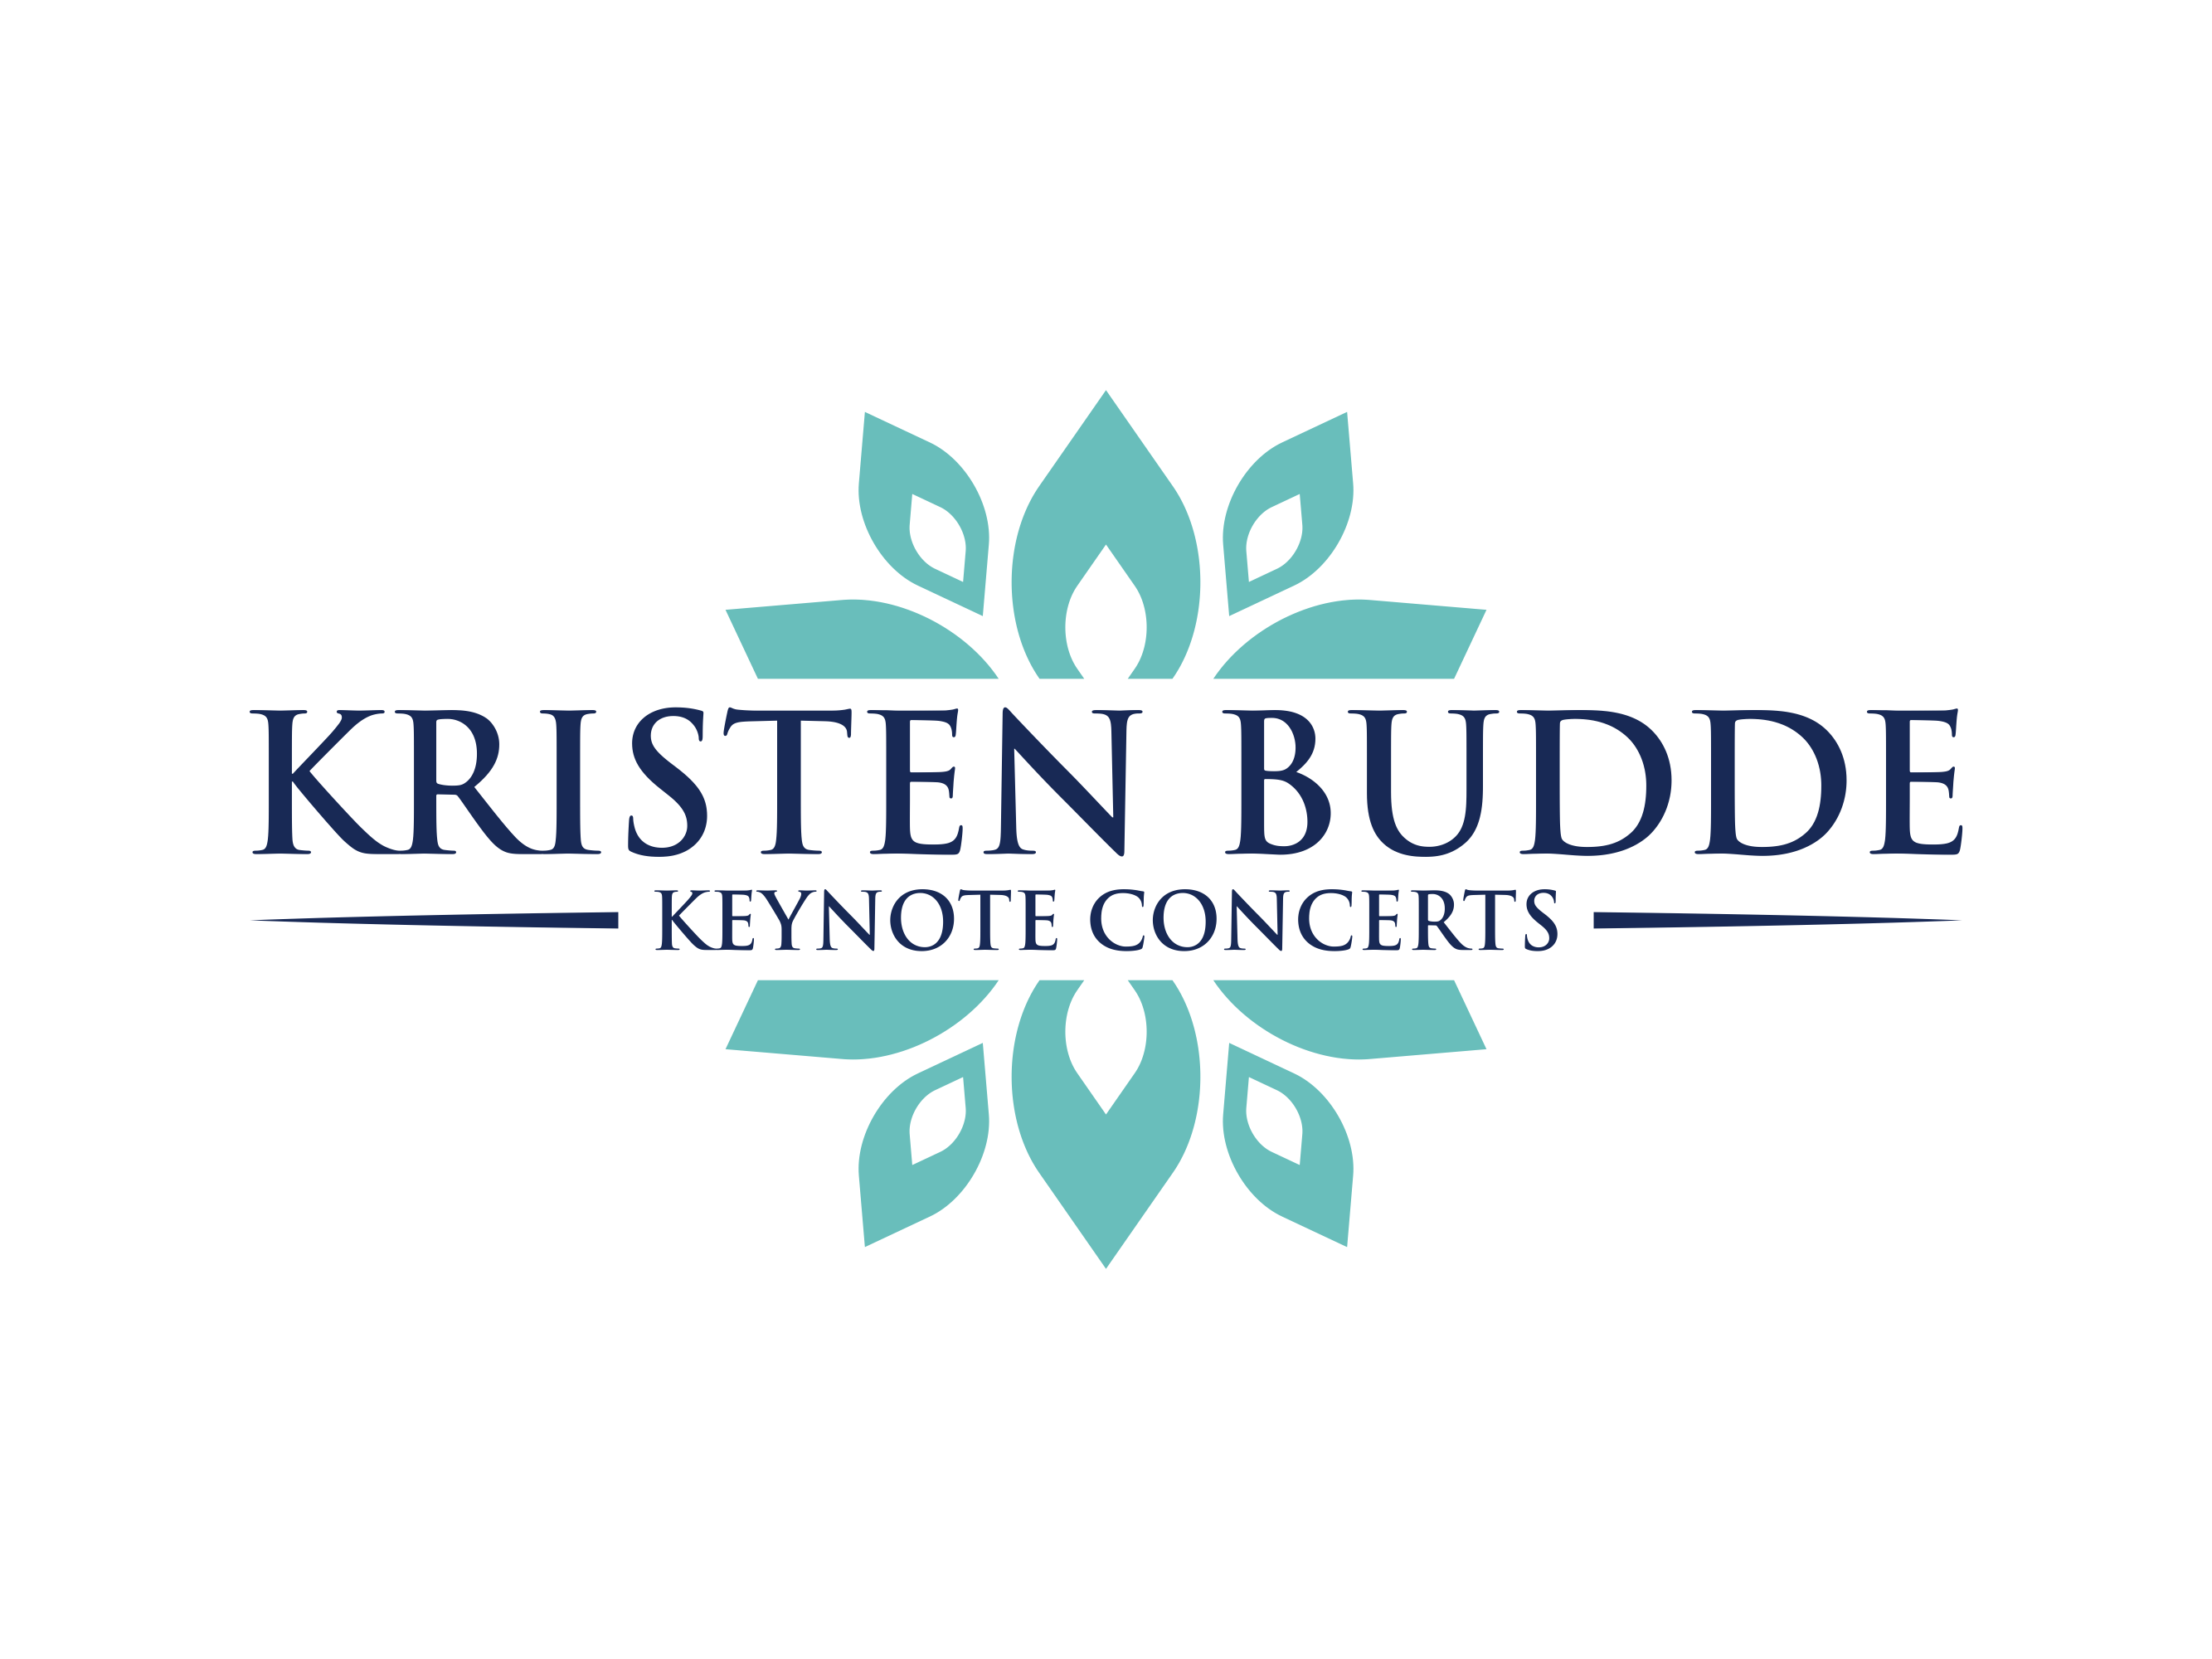 Kristen Budde